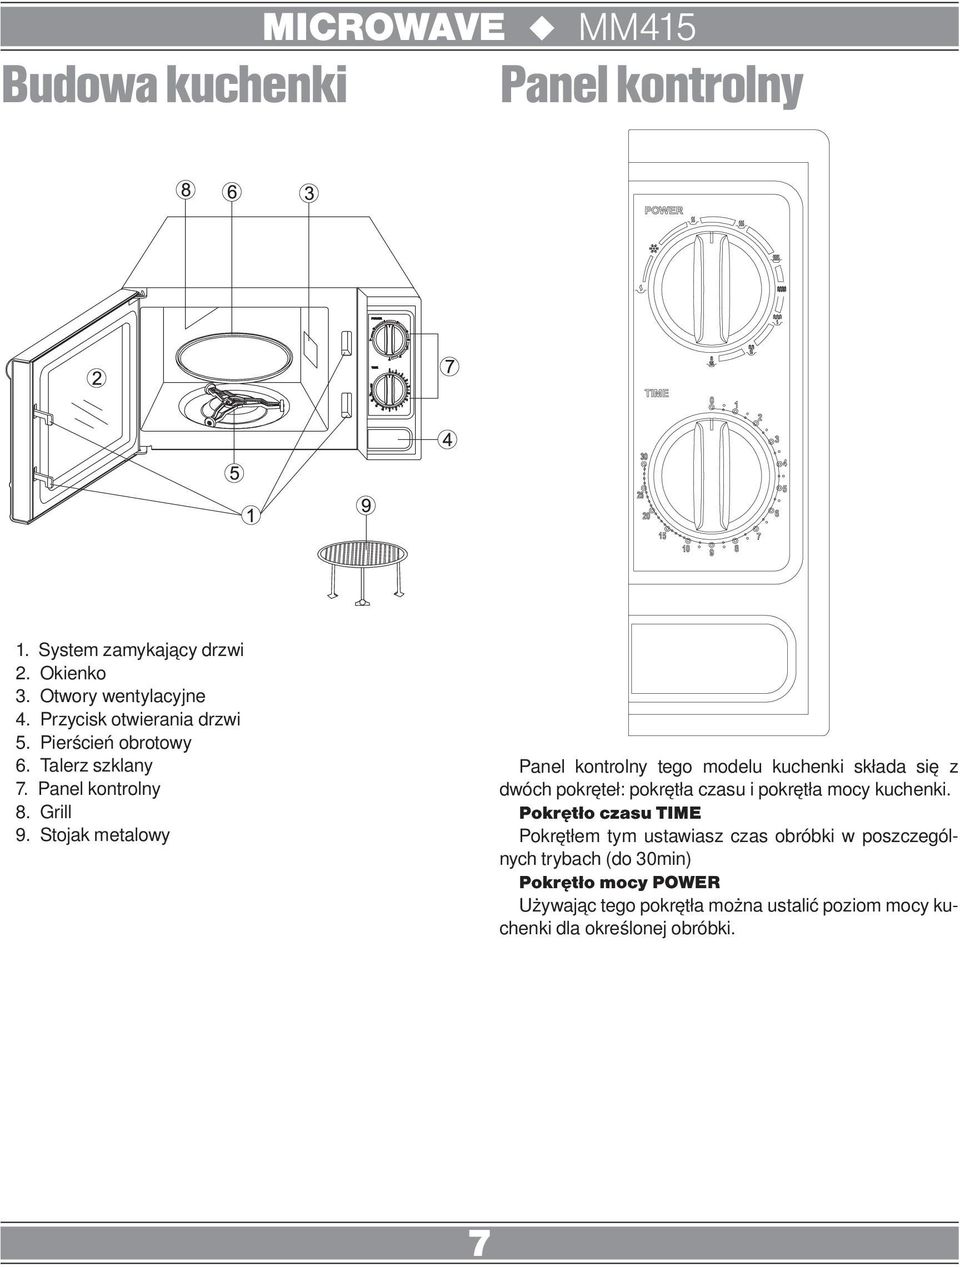 Stojak metalowy Panel kontrolny tego modelu kuchenki składa się z dwóch pokręteł: pokrętła czasu i pokrętła mocy kuchenki.